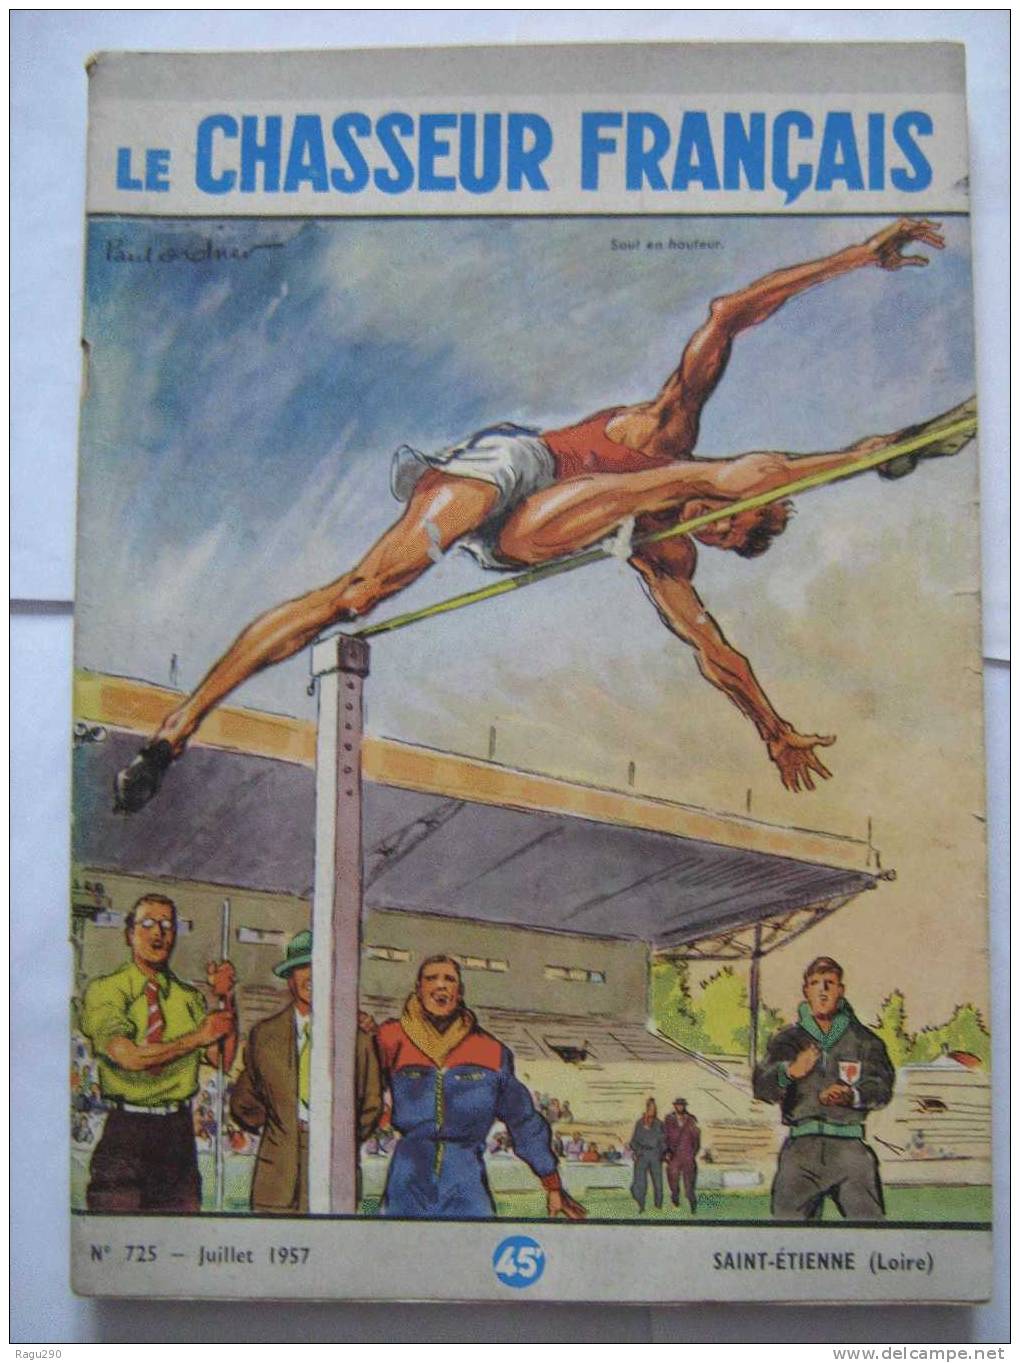 LE CHASSEUR FRANCAIS N° 725 Illustré Par  PAUL ORDNER -- Saut En Hauteur  -- Juillet 1957 - Chasse & Pêche